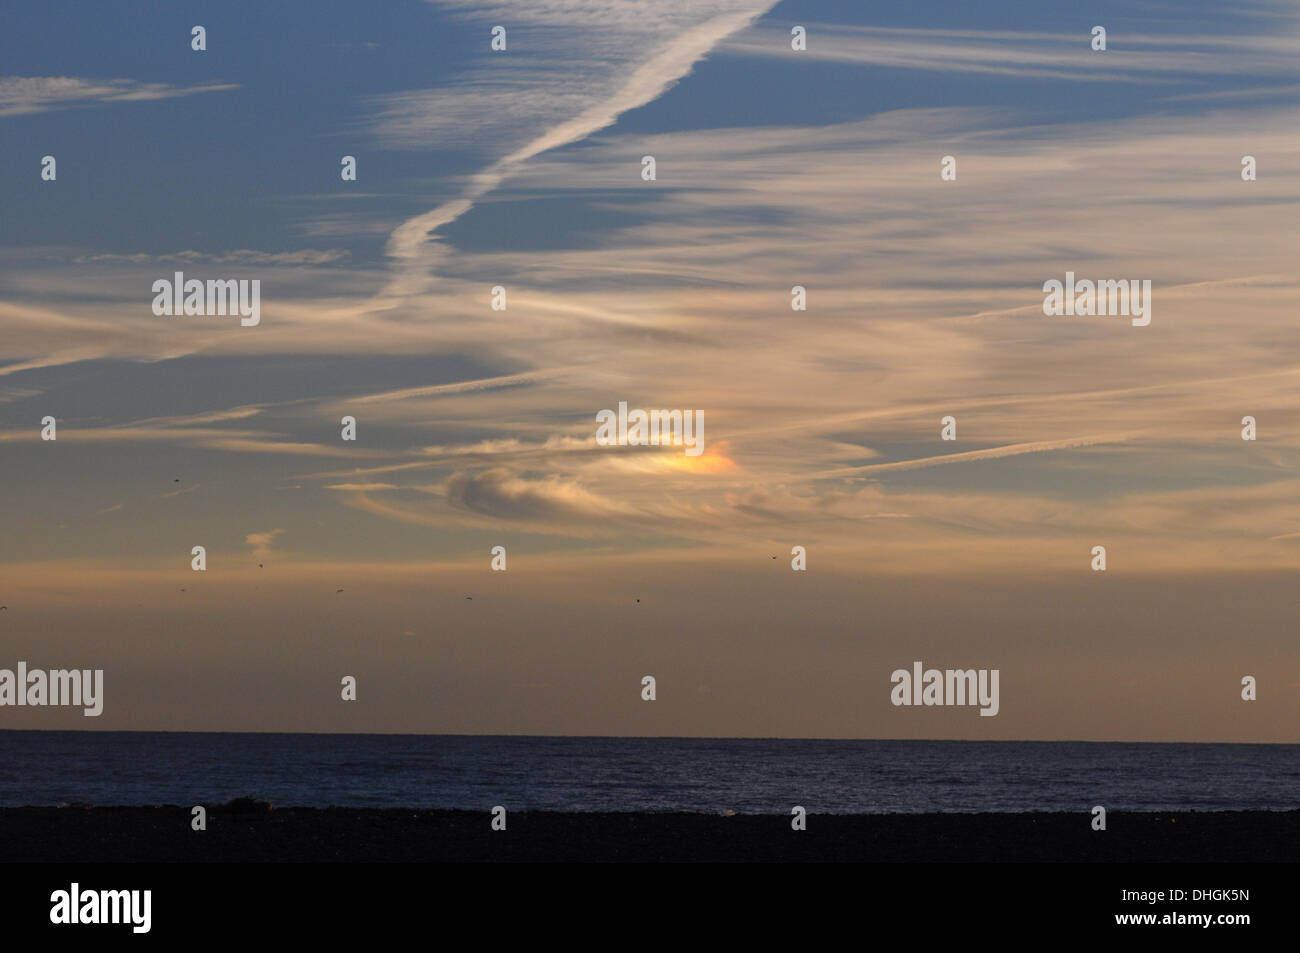 Newhaven, Großbritannien. 10. November 2013. Ungewöhnliche Wolken und Himmel Licht über das Meer in Newhaven. Sonnenuntergang war auf der rechten Seite des Bildes aus. Das ist wahrscheinlich ein Phänomen bekannt als "Circumhorizon Arc". Bildnachweis: David Burr/Alamy Live-Nachrichten Stockfoto